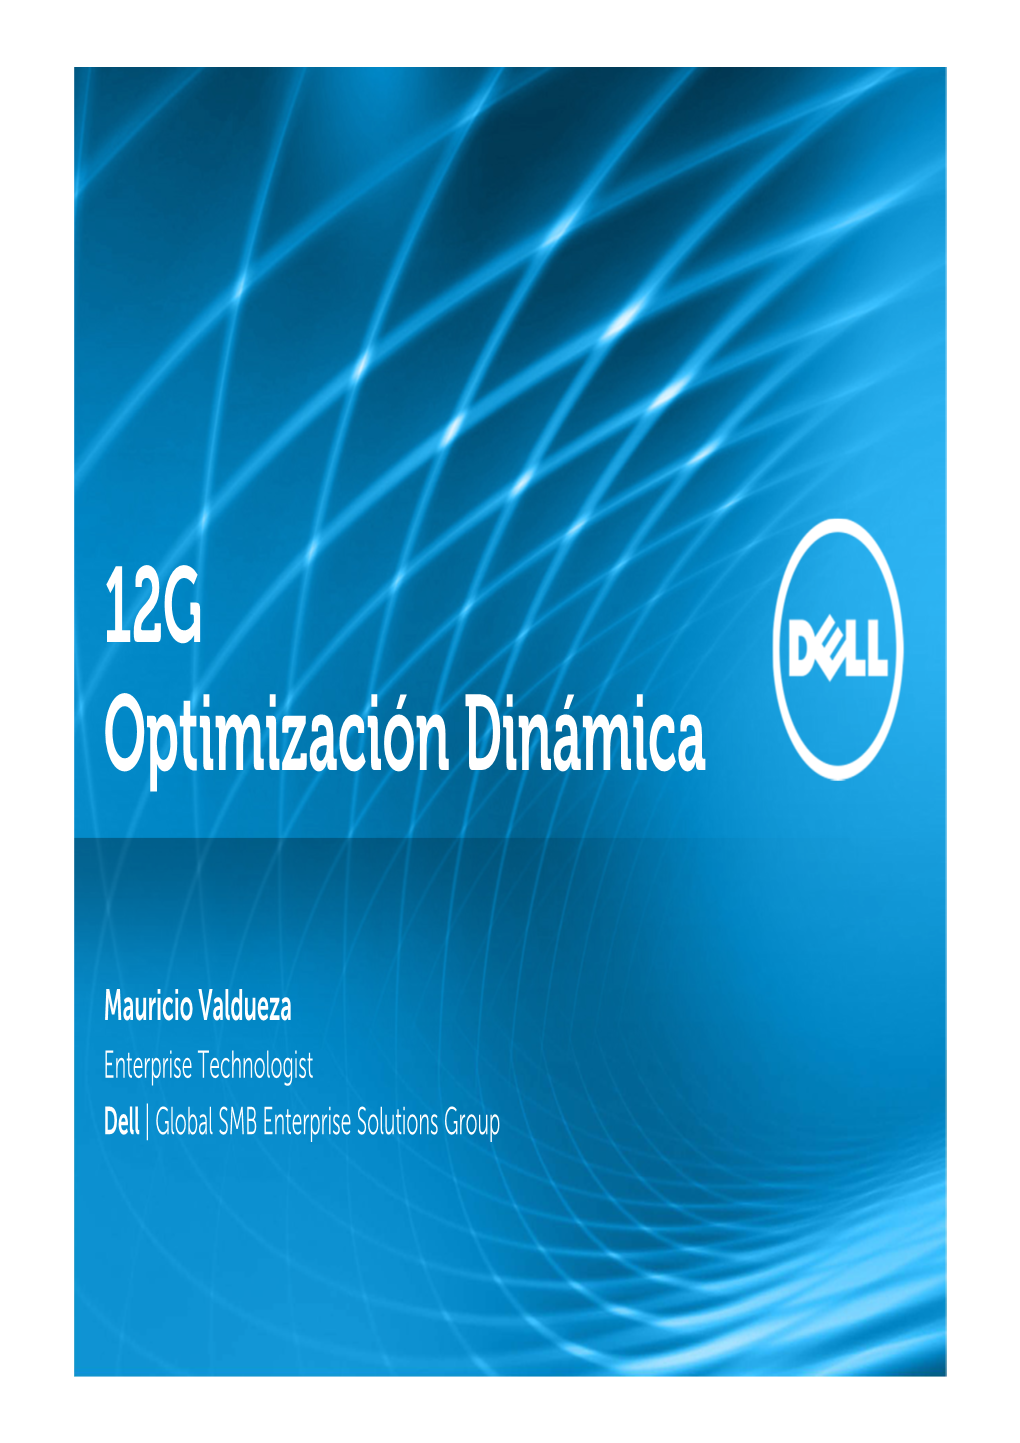 12G Optimización Dinámica